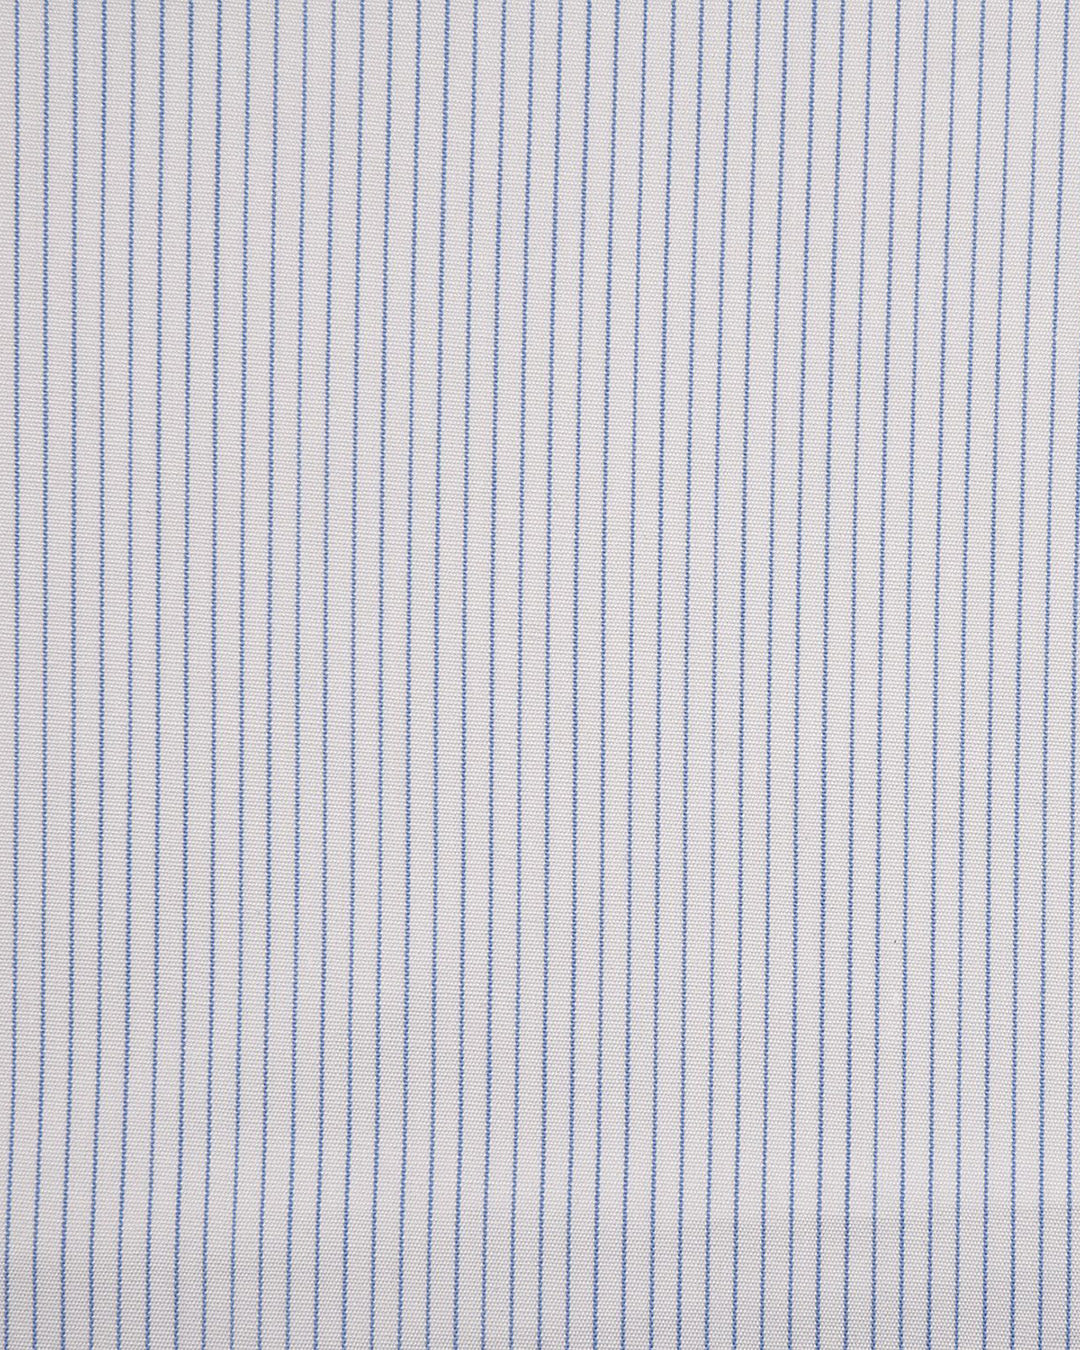 Brembana Blue Hairline Stripes on White